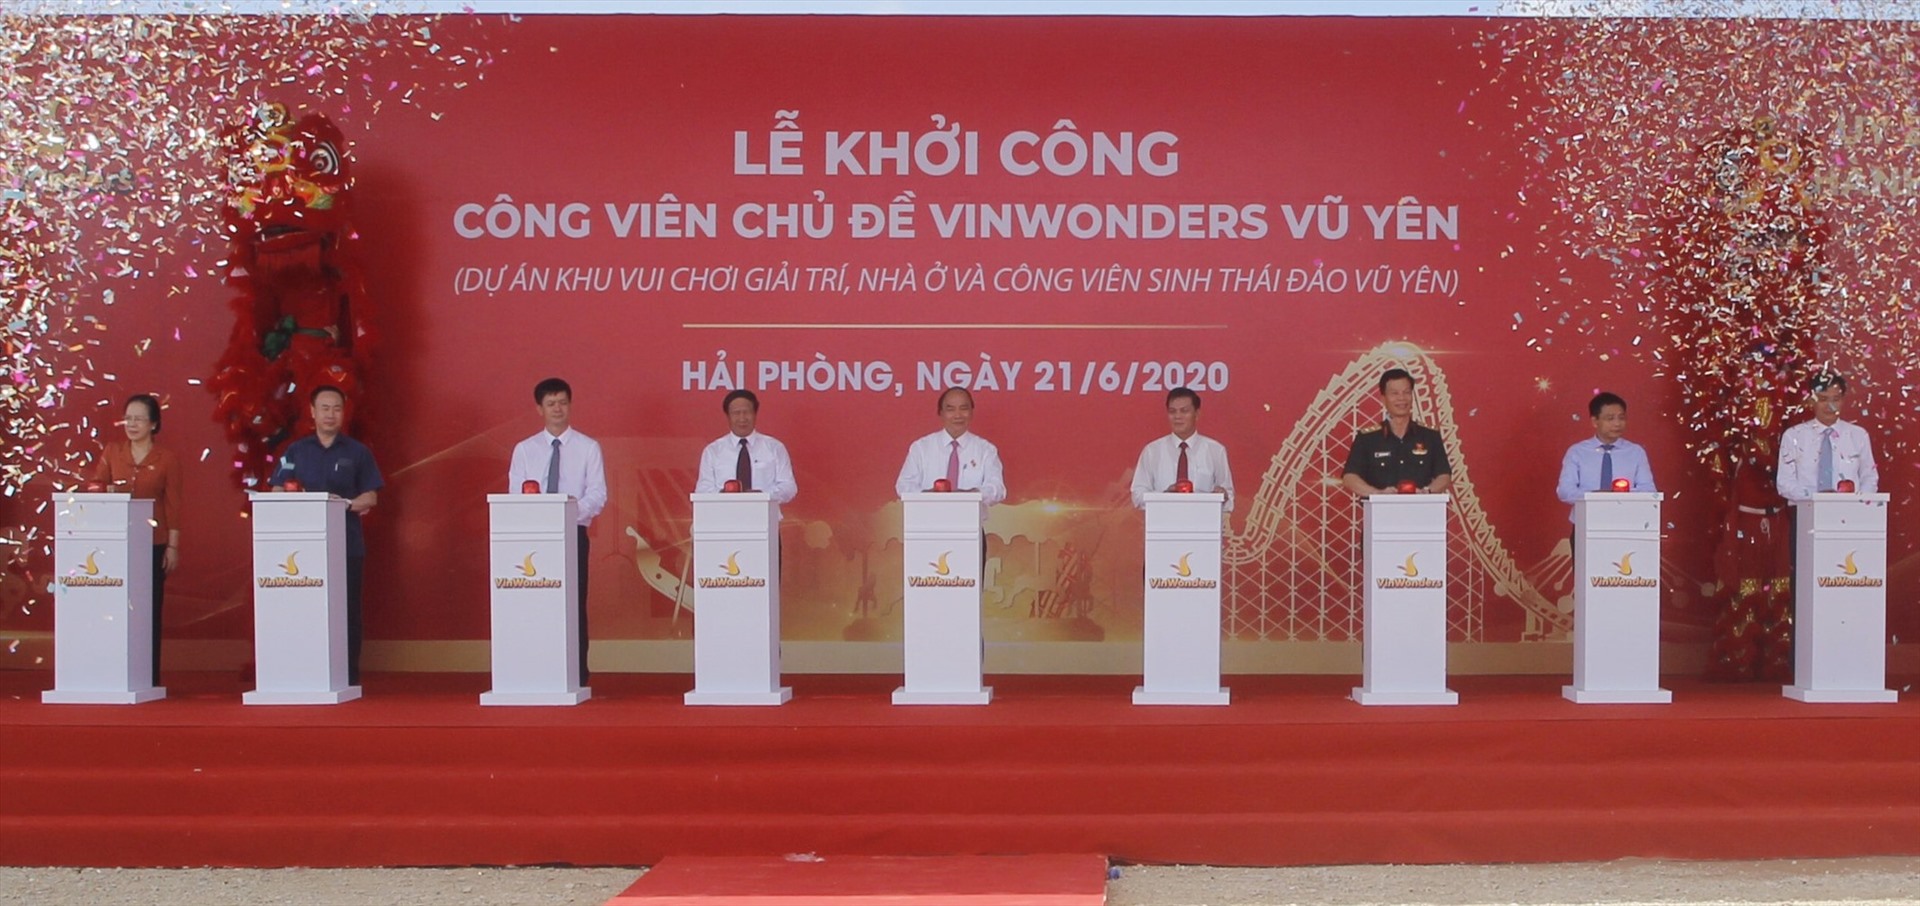 Thủ tướng dự lễ khởi công công viên Vinwonders Vũ Yên ngày 21.6 - ảnh MH